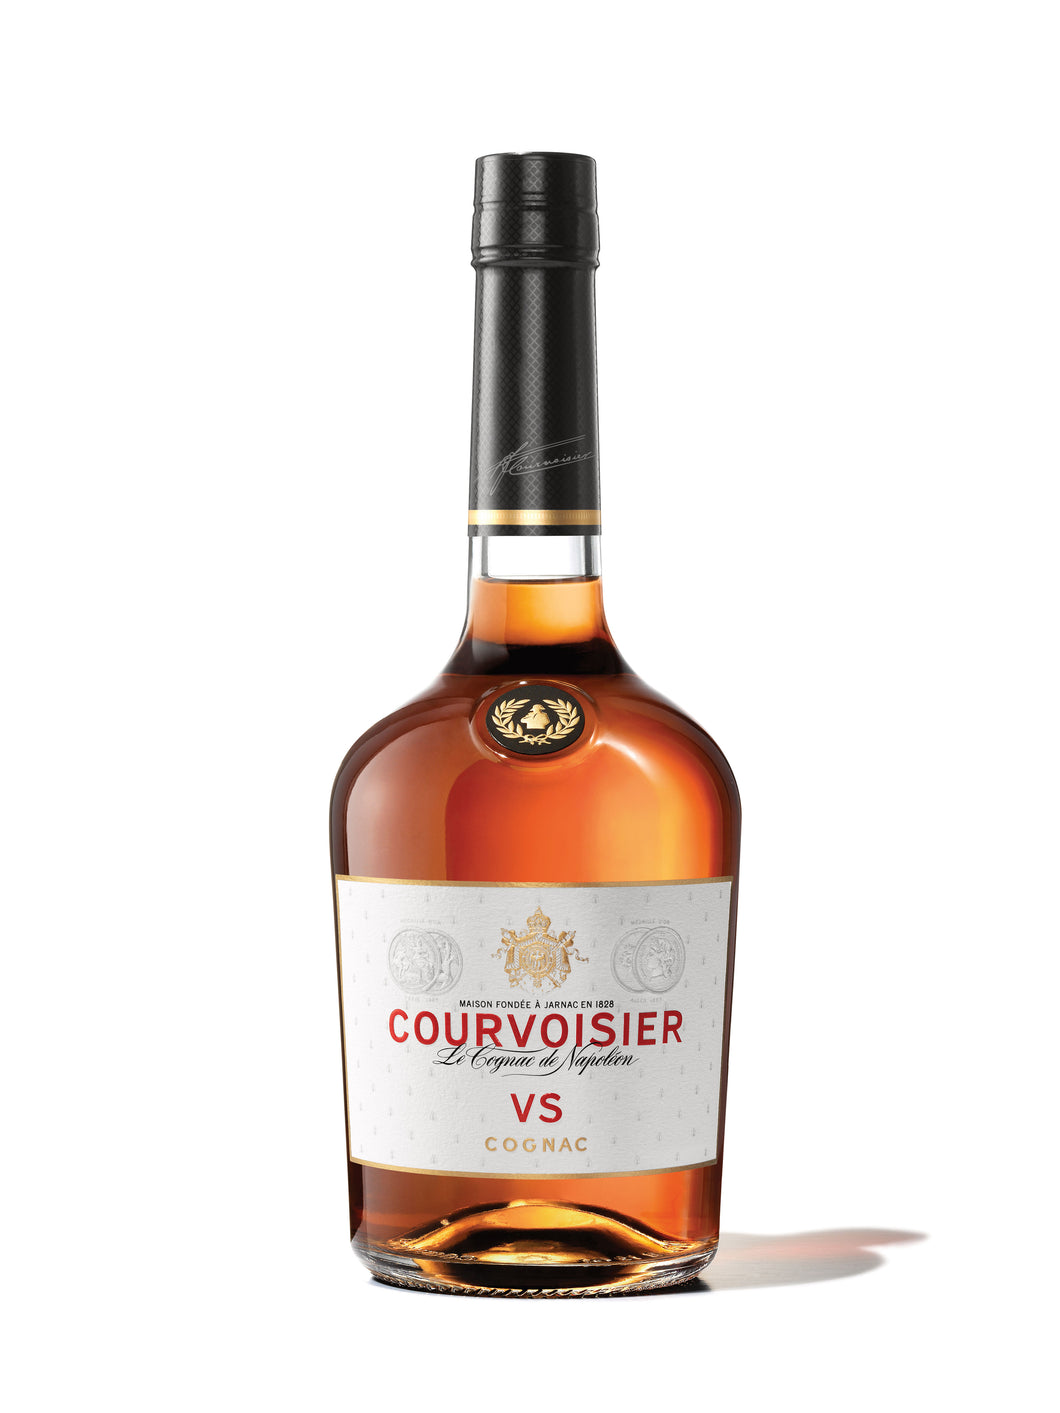 Courvoisier VS Cognac 750 mL bottle